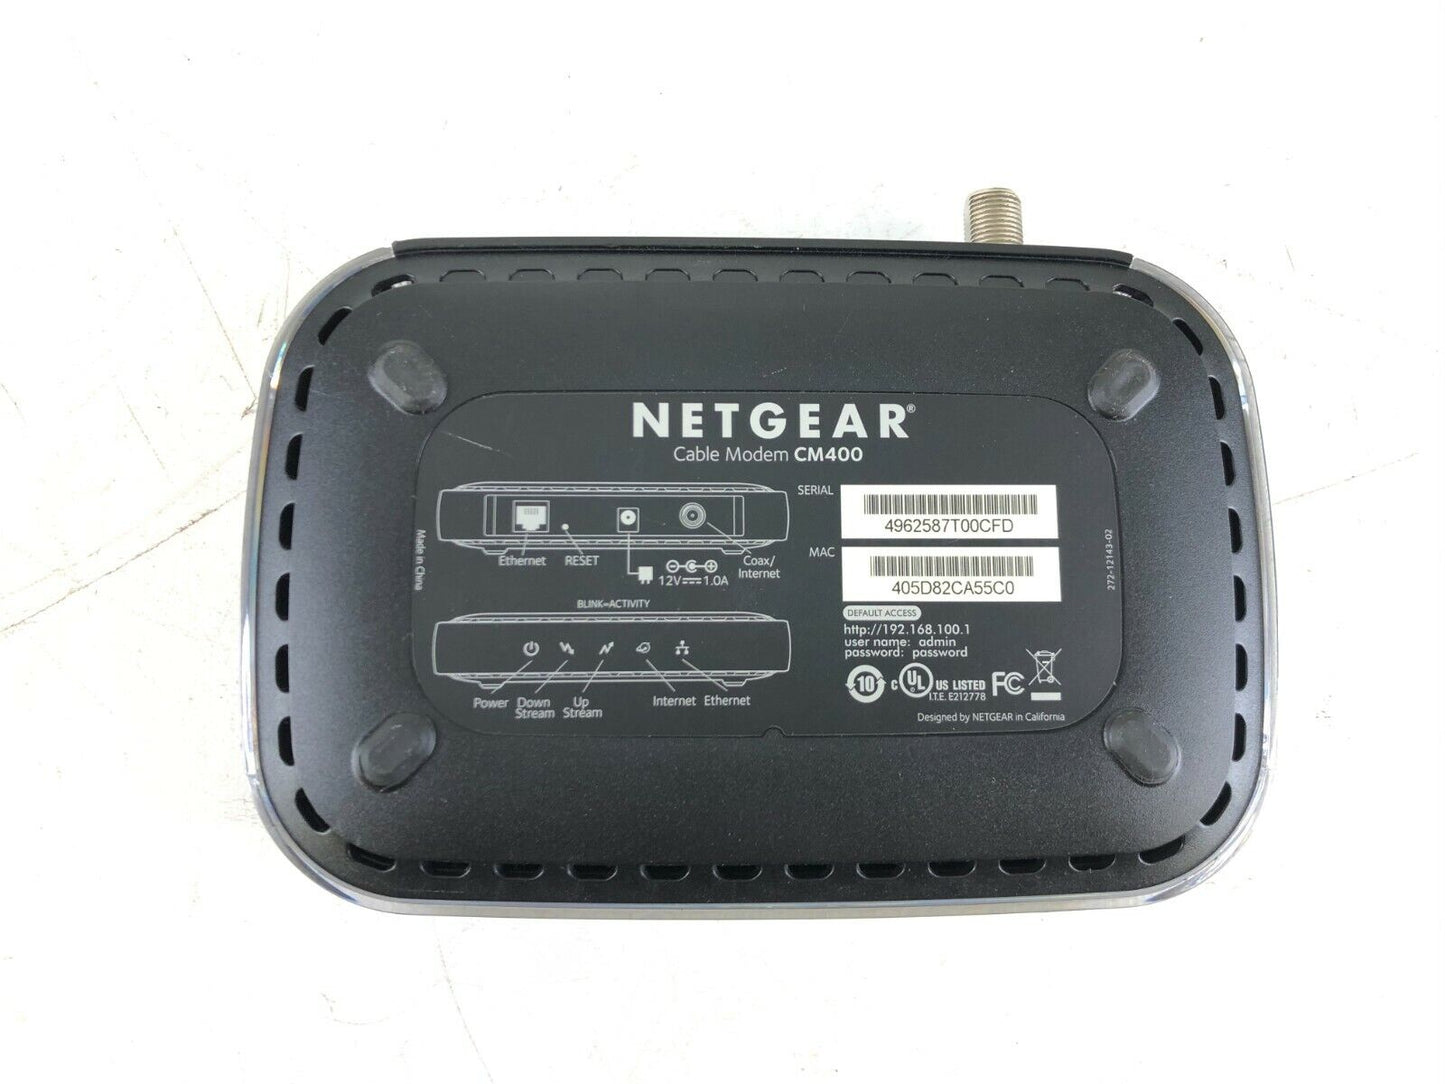 Lot of 3 Netgear CM400 Cable Modem